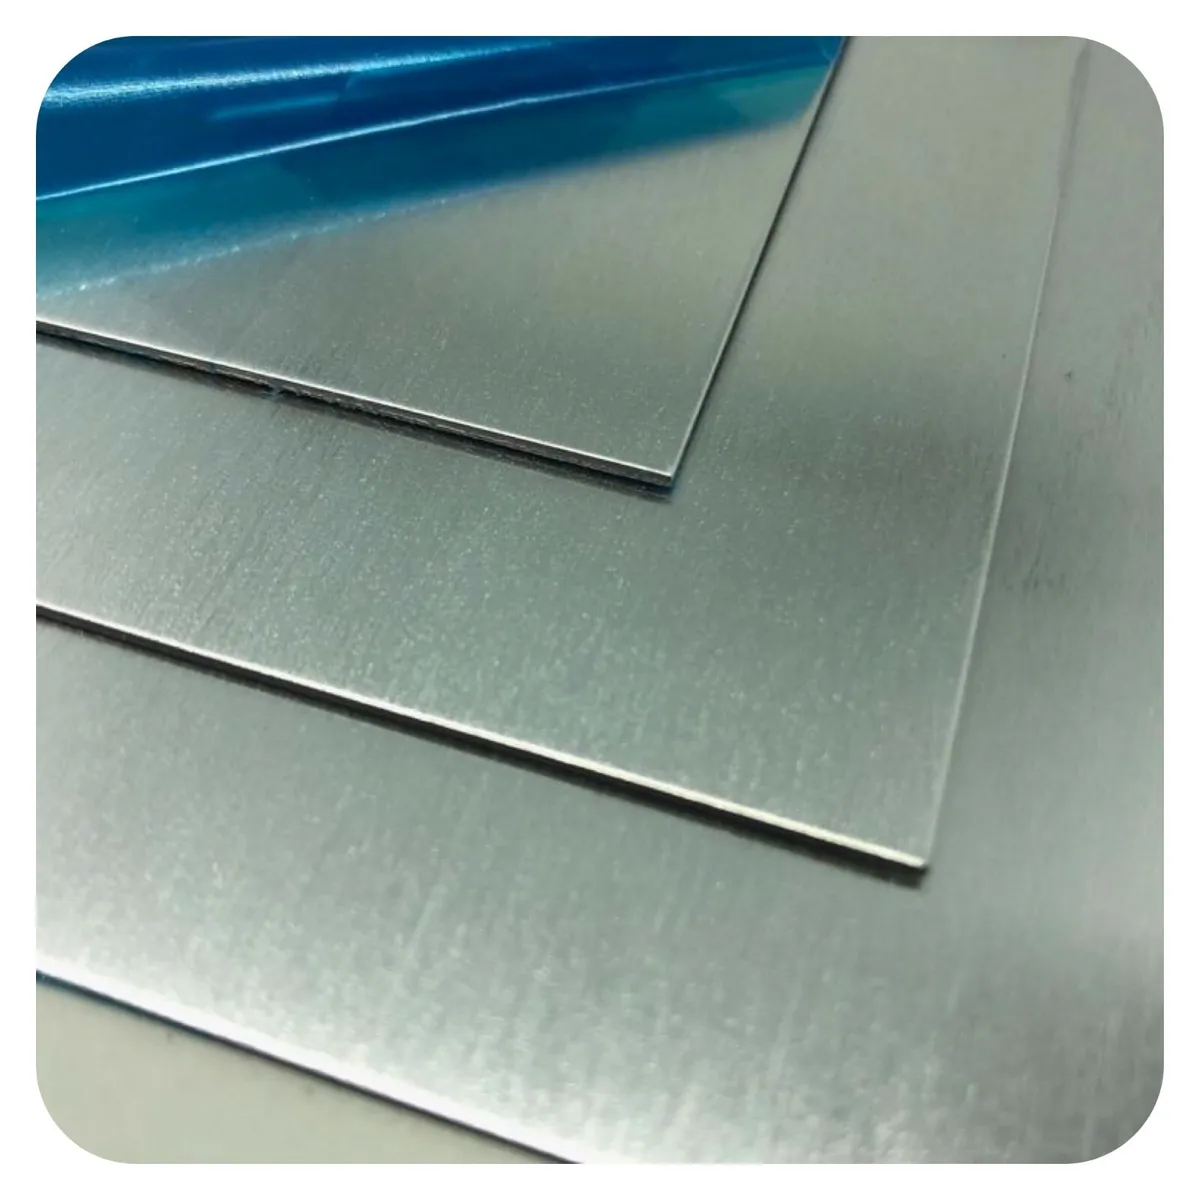 Aluminium Blech Platten 1,5mm x 200 mm x 300mm Platte Alu Platte Zuschnitt